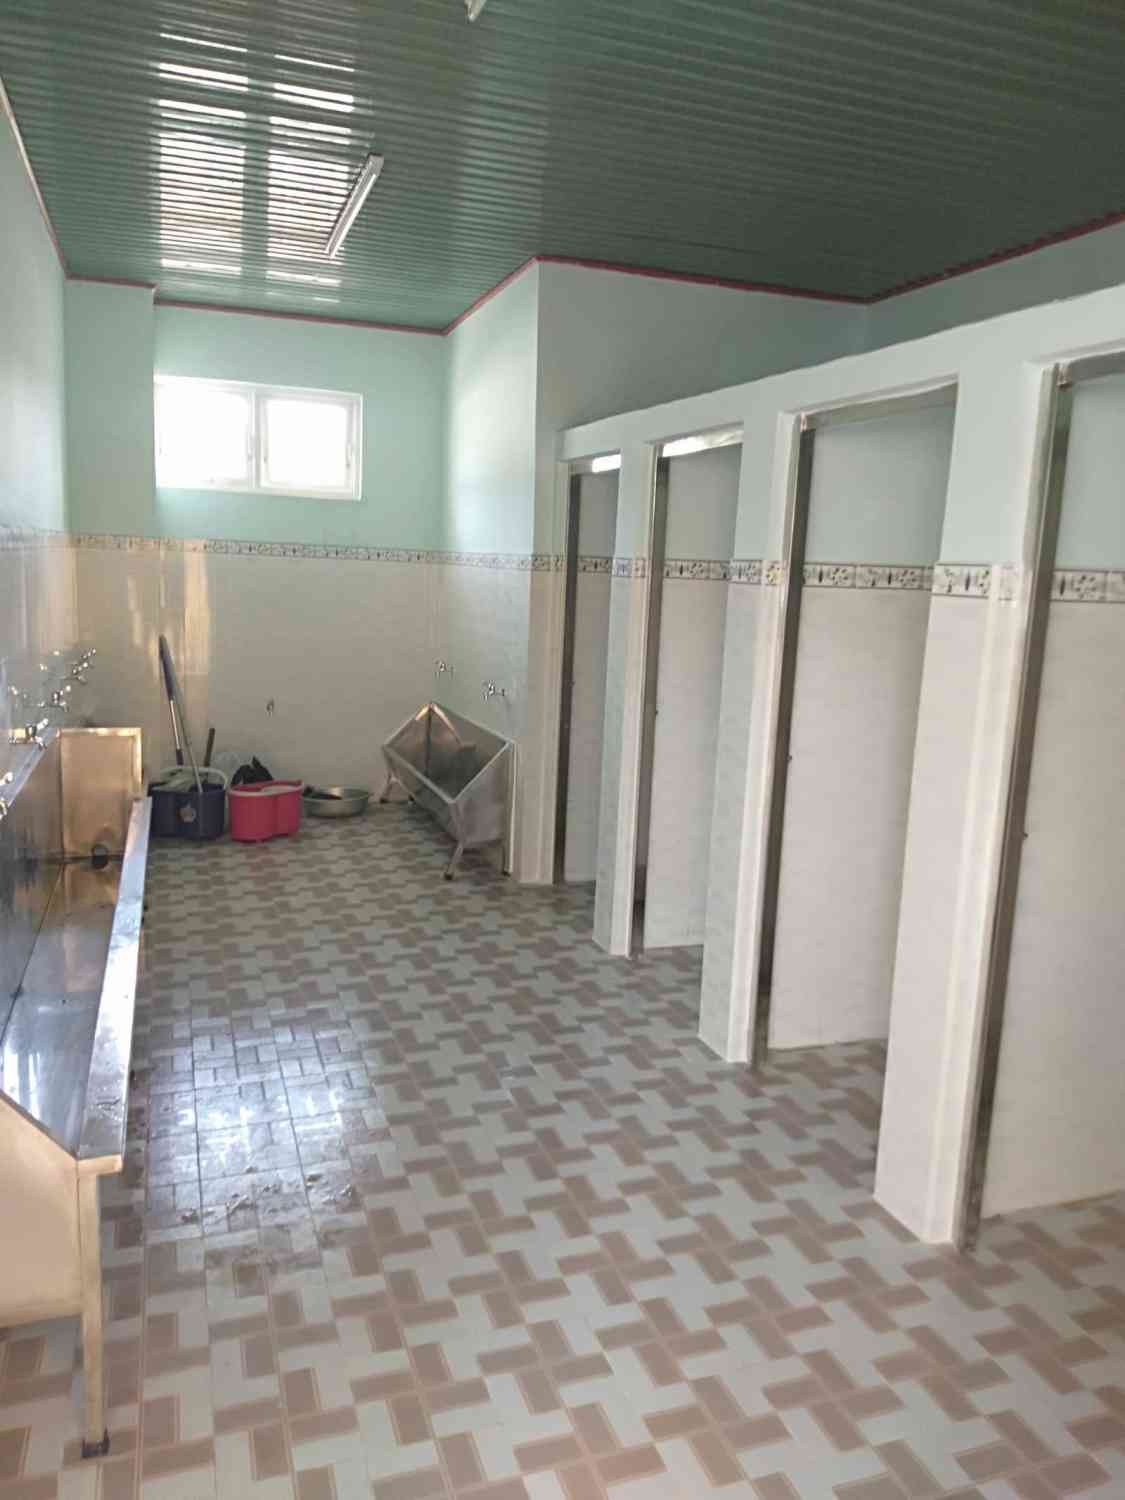 Khu vực nhà vệ sinh dành cho học sinh nam